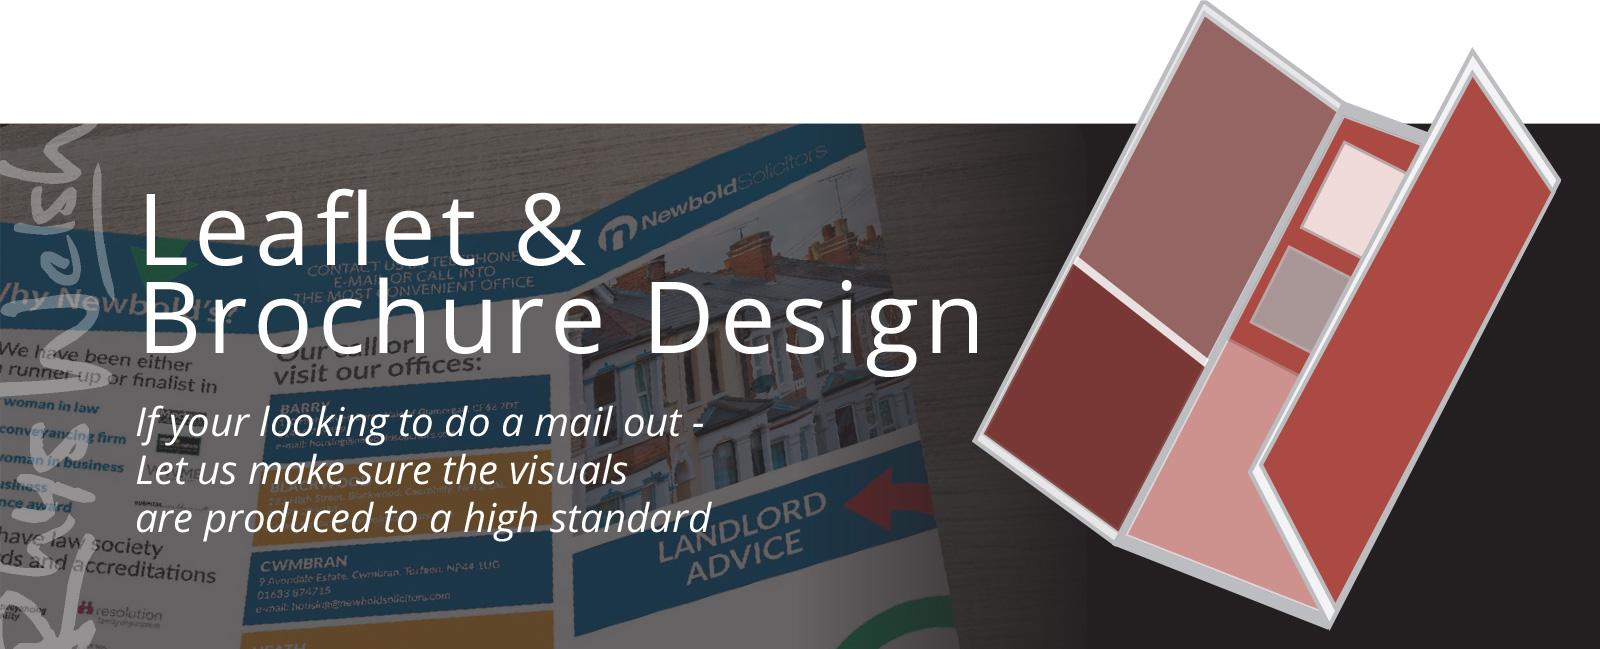 Leaflet Brochure Design cardiff slide